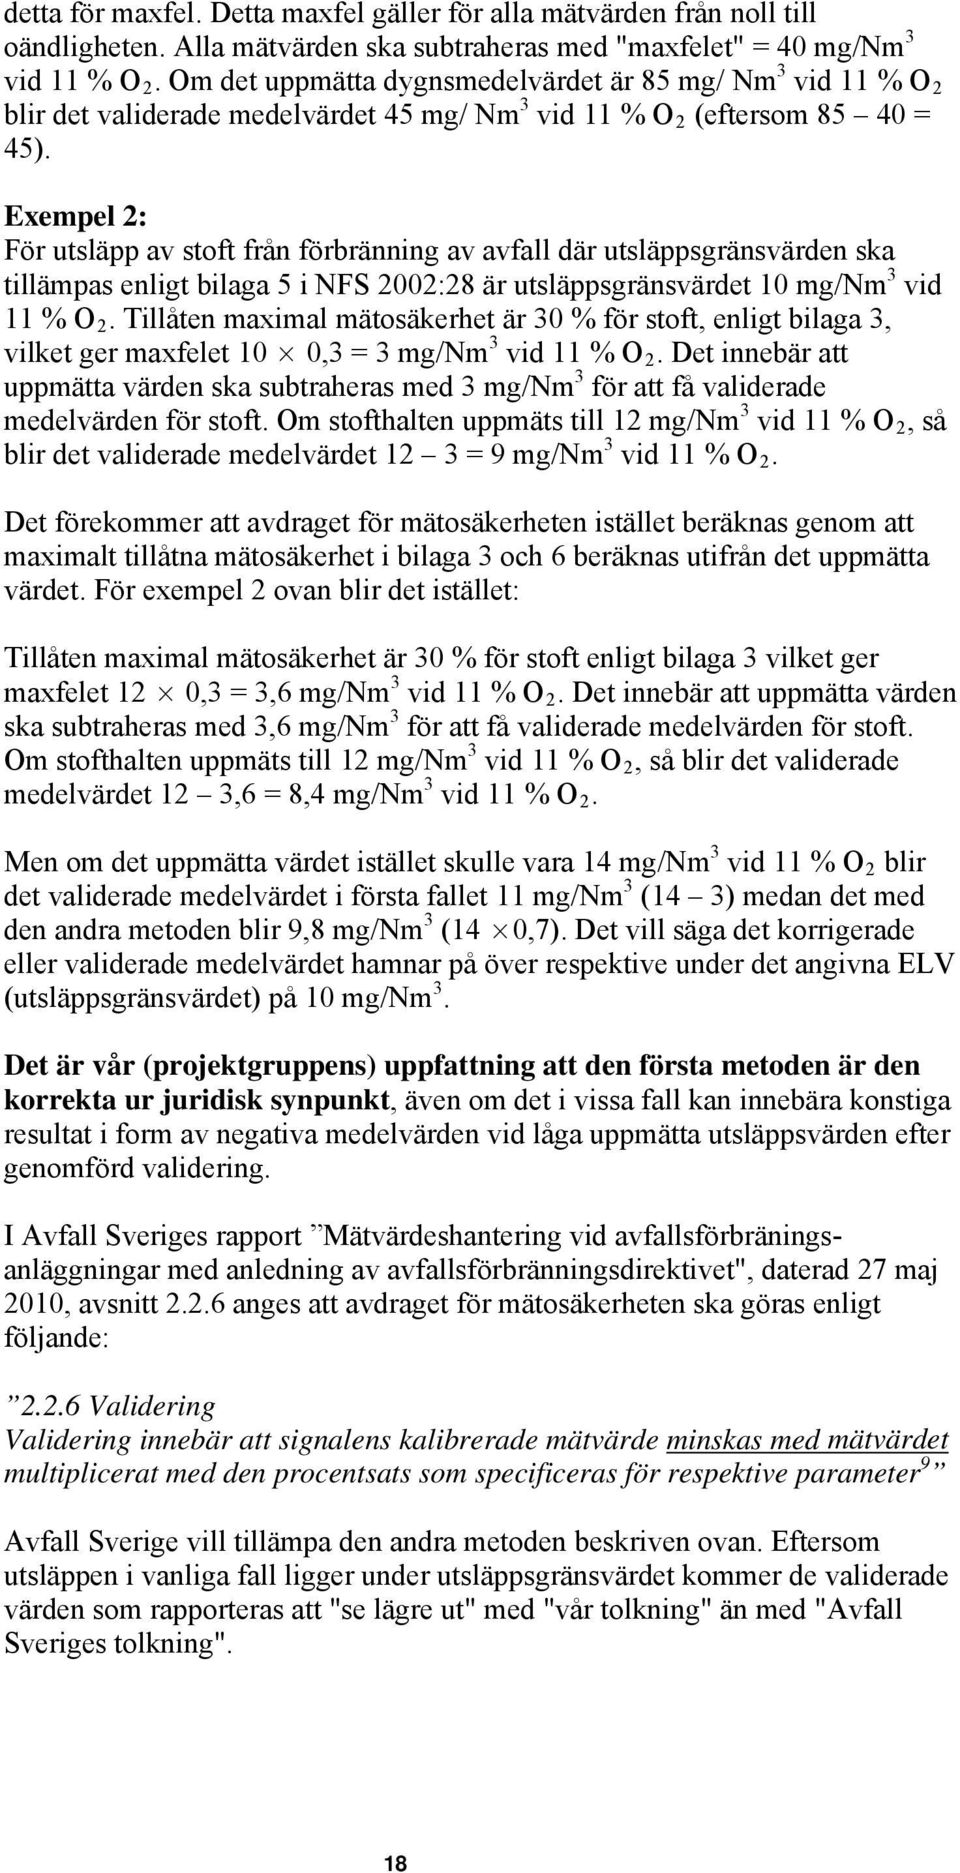 Exempel 2: För utsläpp av stoft från förbränning av avfall där utsläppsgränsvärden ska tillämpas enligt bilaga 5 i NFS 2002:28 är utsläppsgränsvärdet 10 mg/nm 3 vid 11 % O 2.